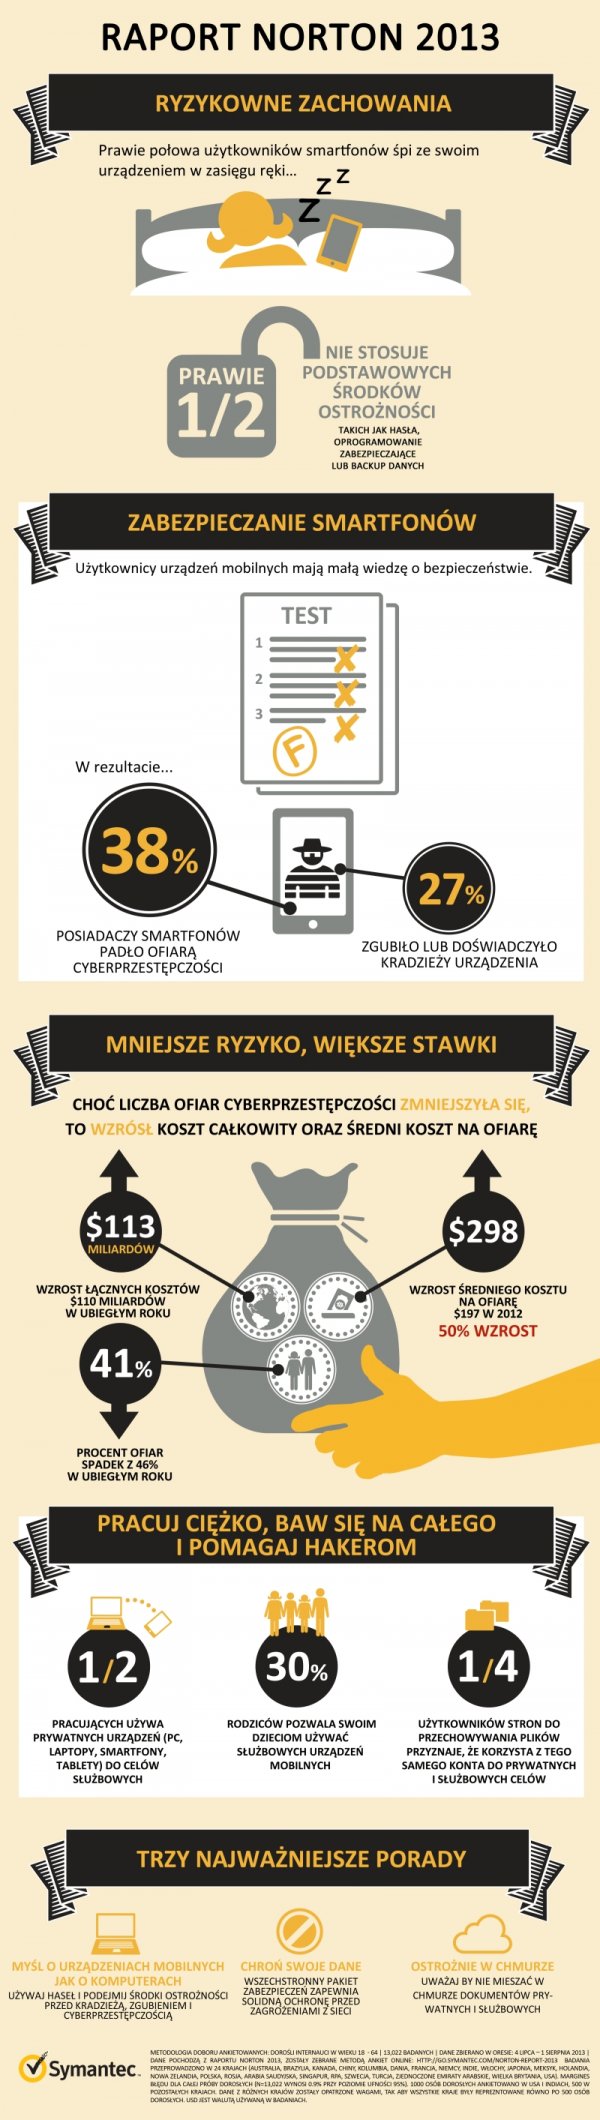 Raport Norton 2013 - infografika